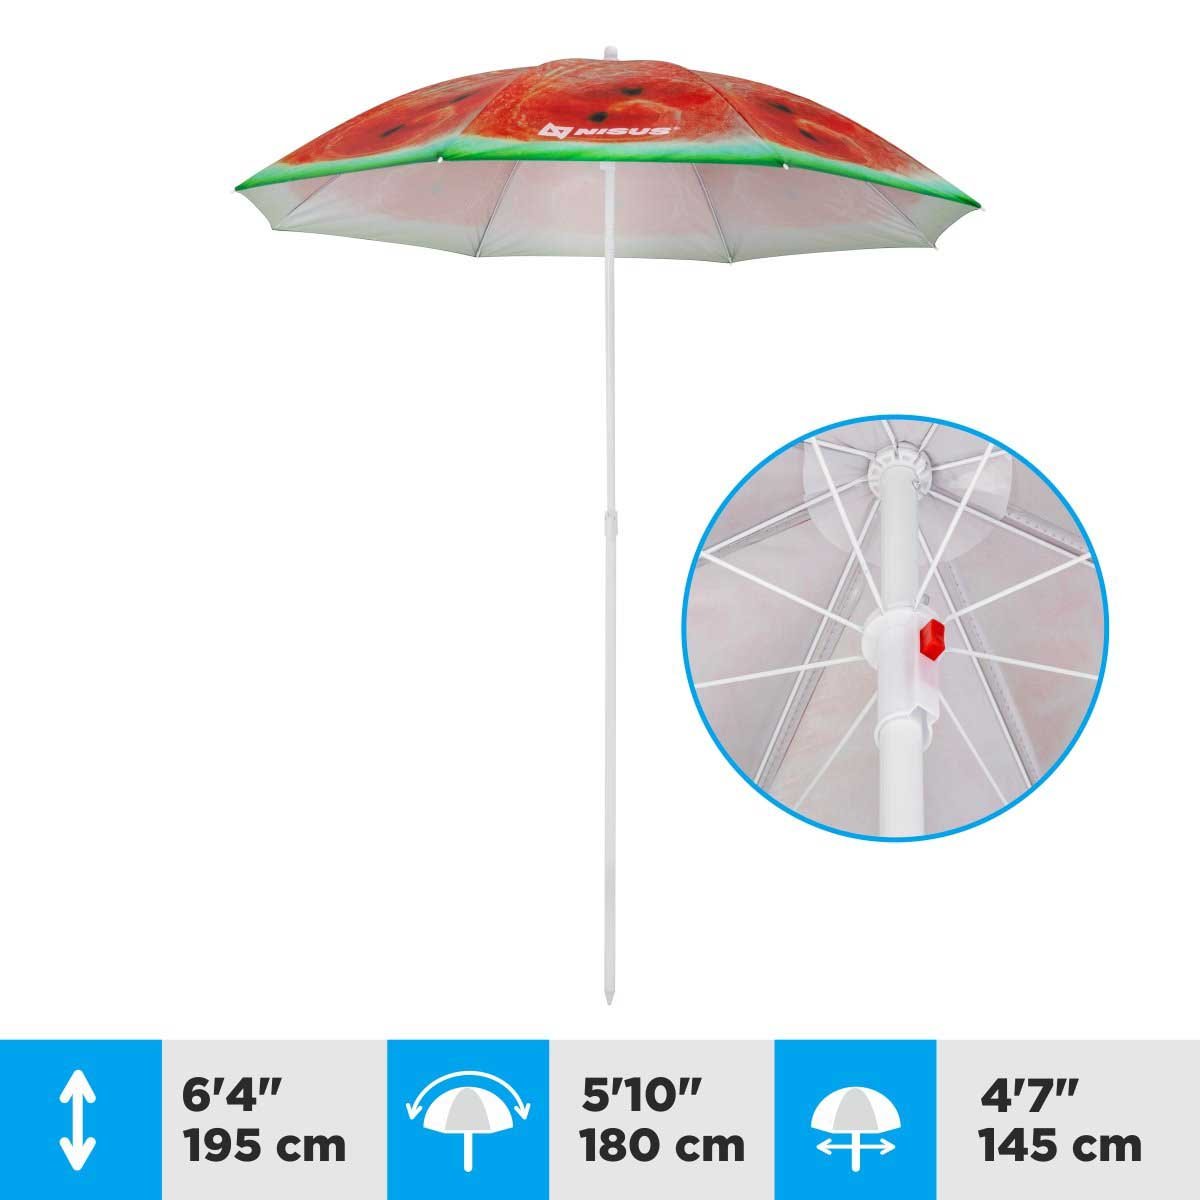 A 4.7 ft Watermelon Folding Tilting Beach Umbrella is 6.4 feet high